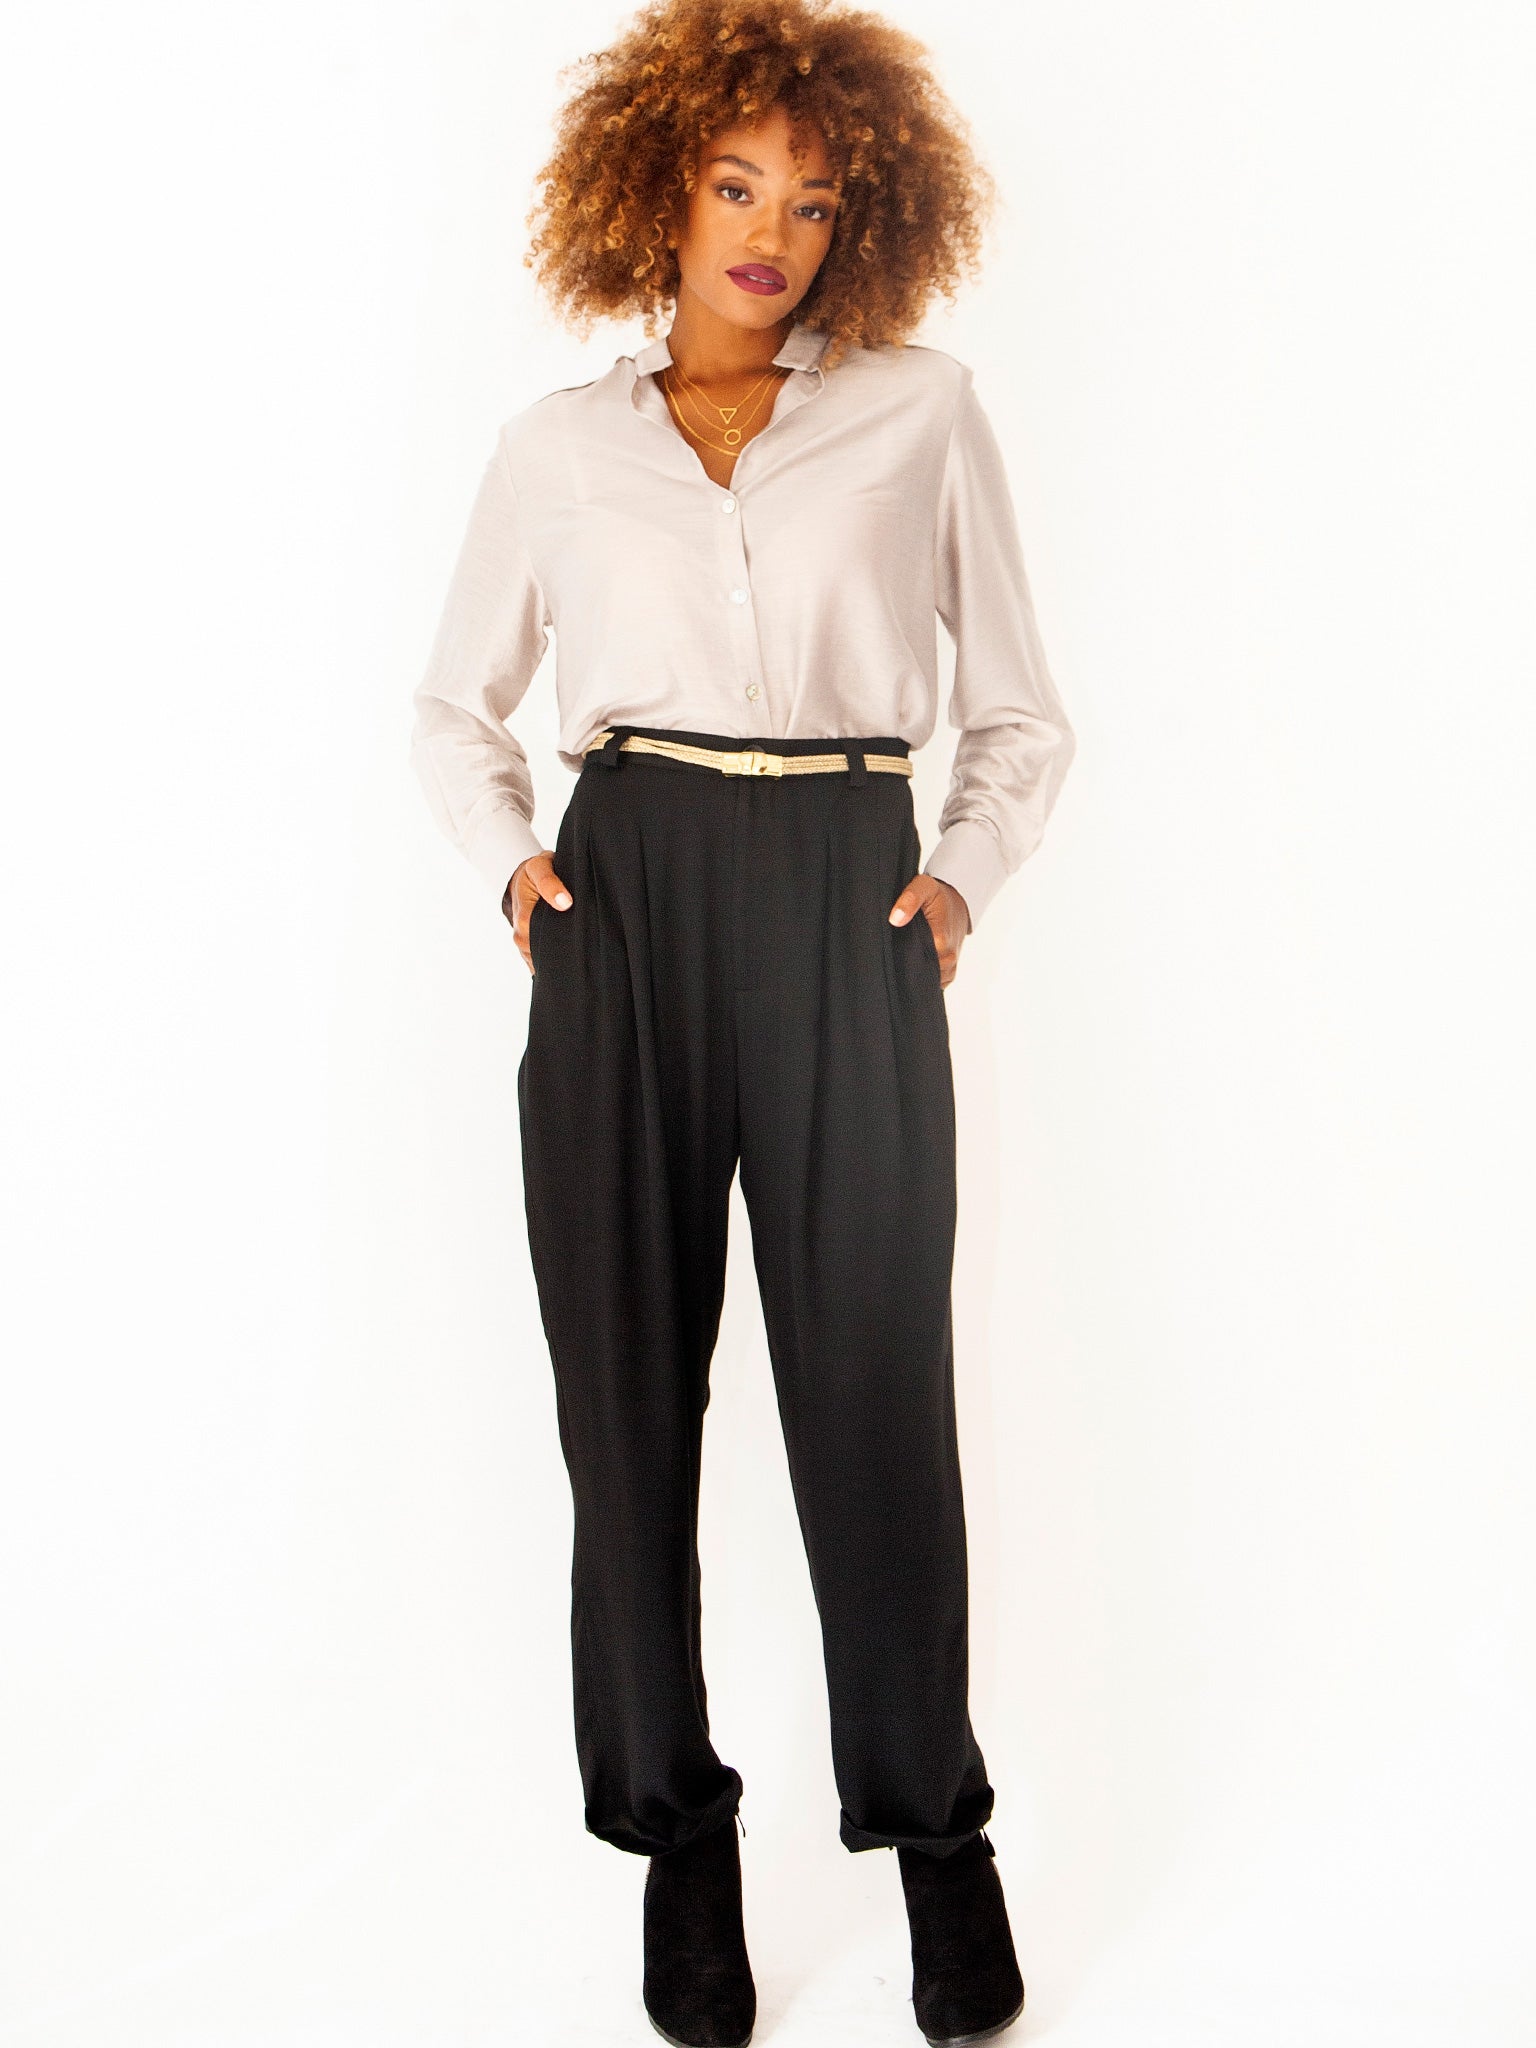 Buy Women's Black Cargo Pants Online at Bewakoof